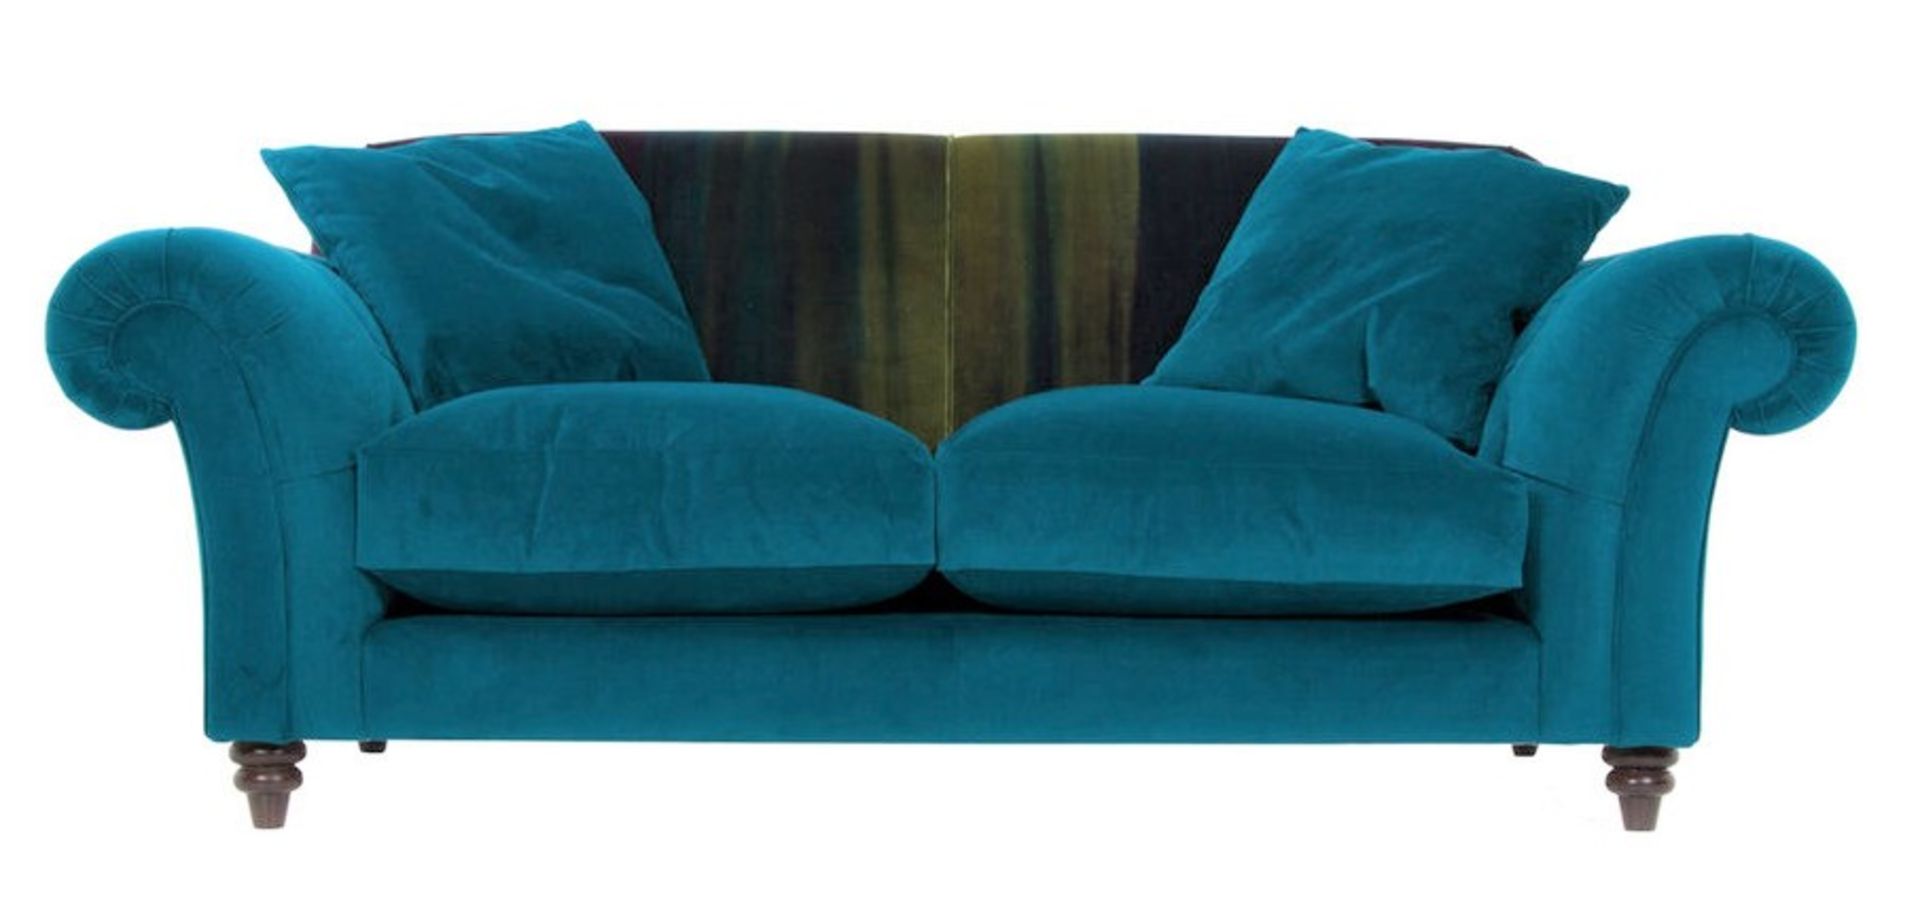 1 x Lytton Mallard Sofa Upholstered in Harlequin Velvet Fabric - RRP £1,259!